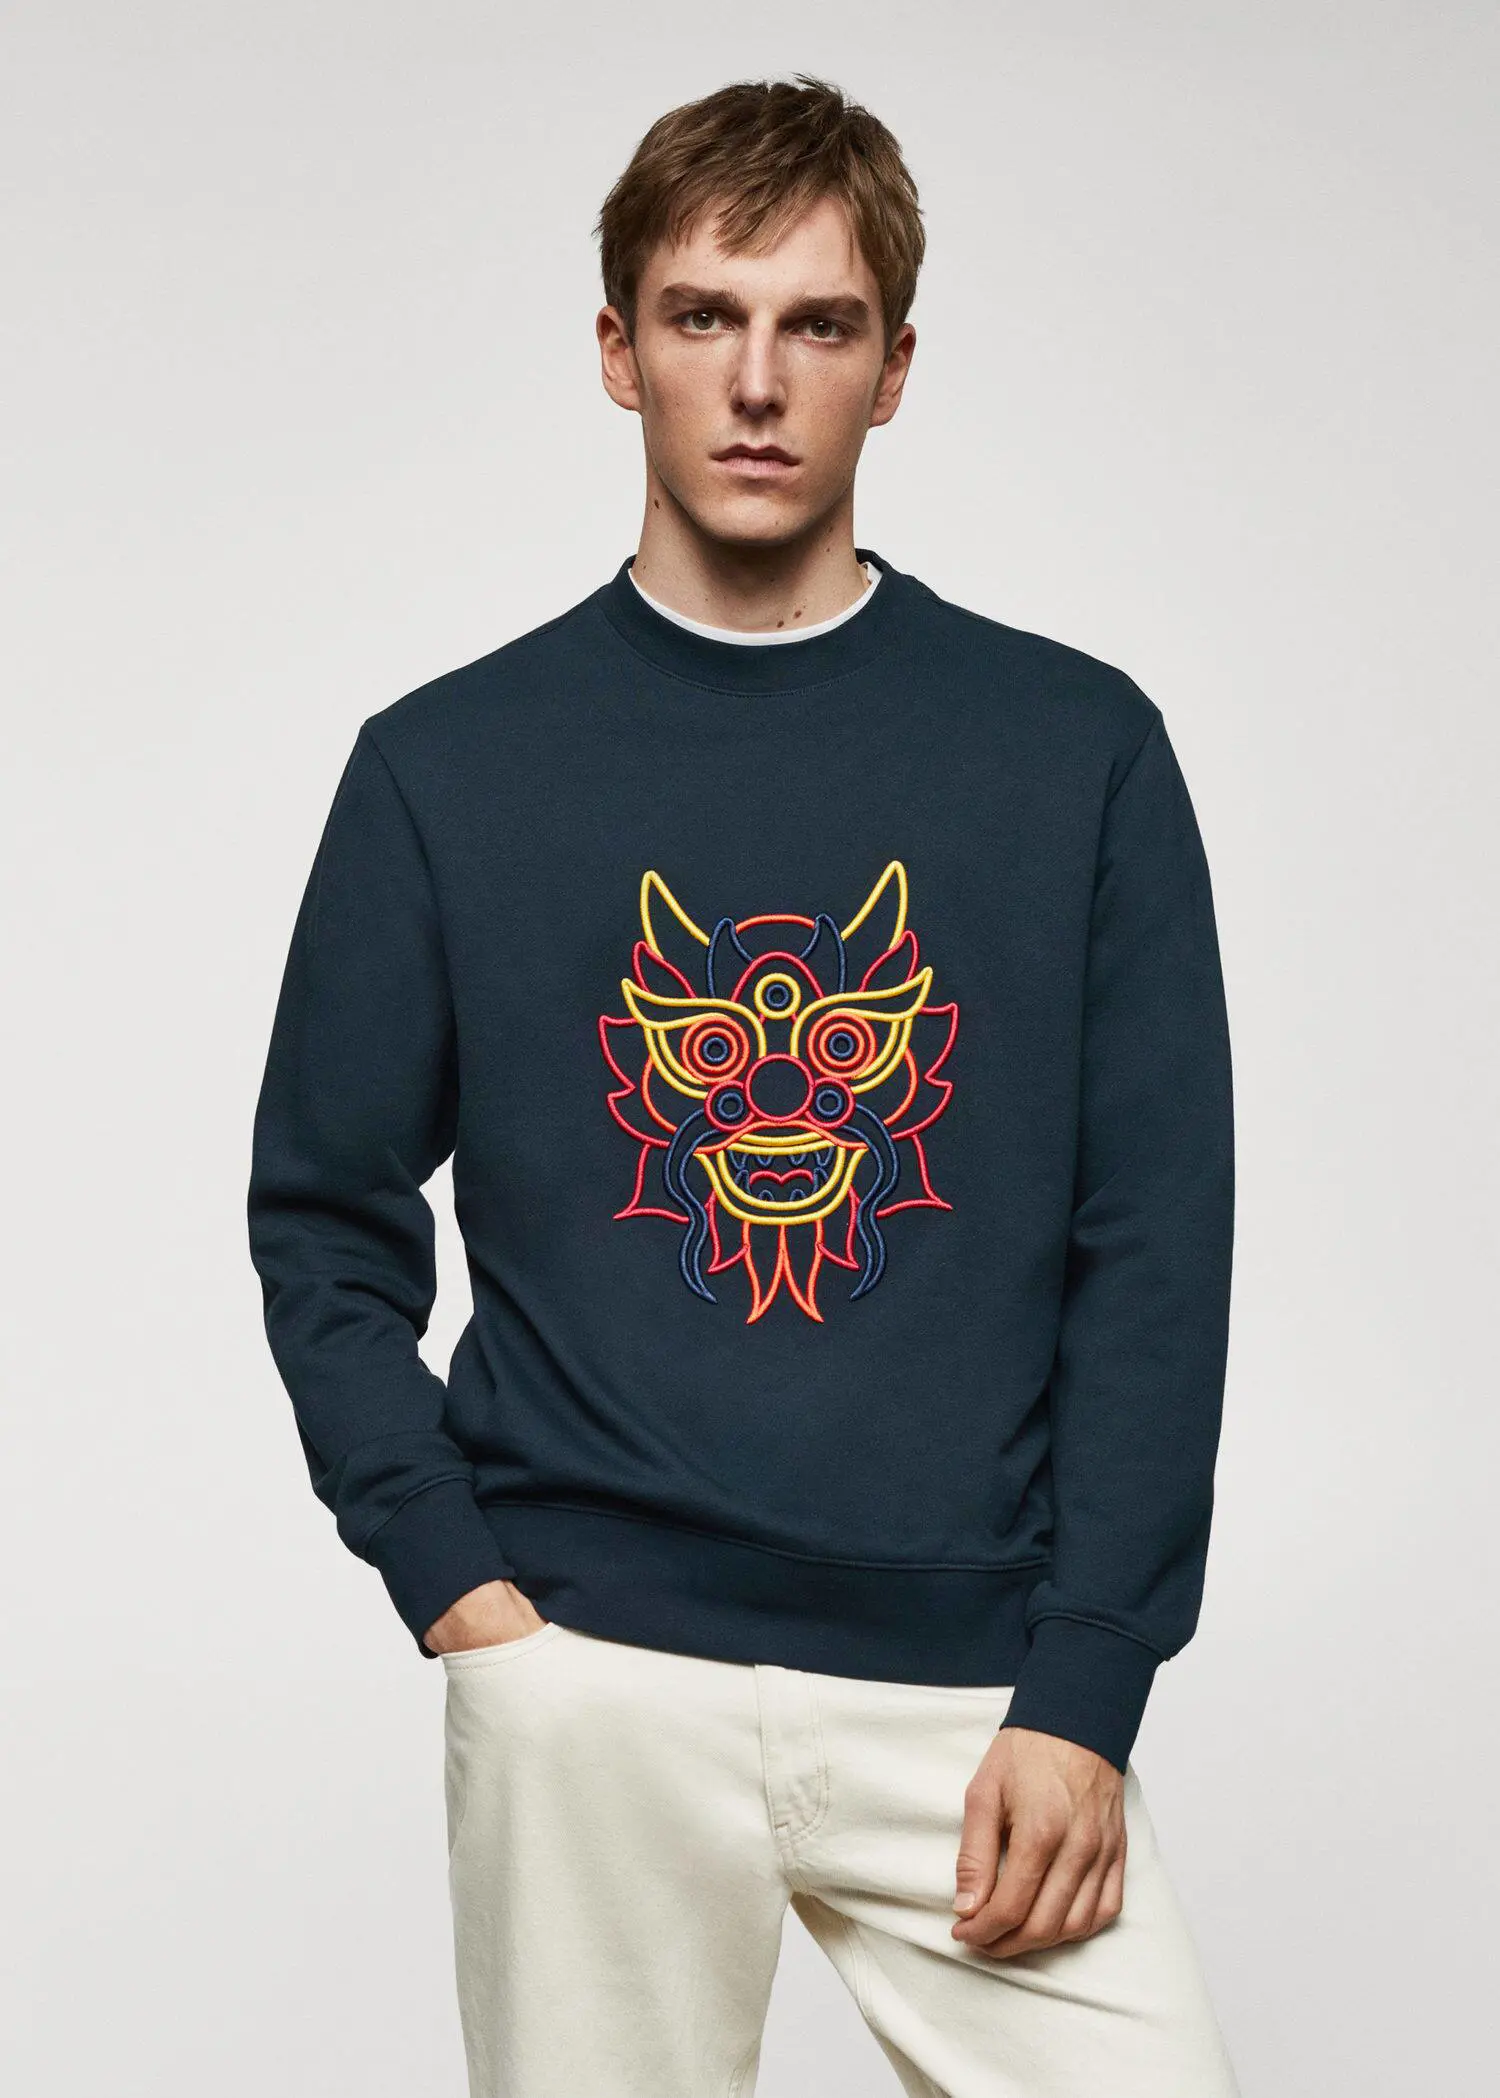 Mango 100% cotton sweatshirt embroidered detail. 1